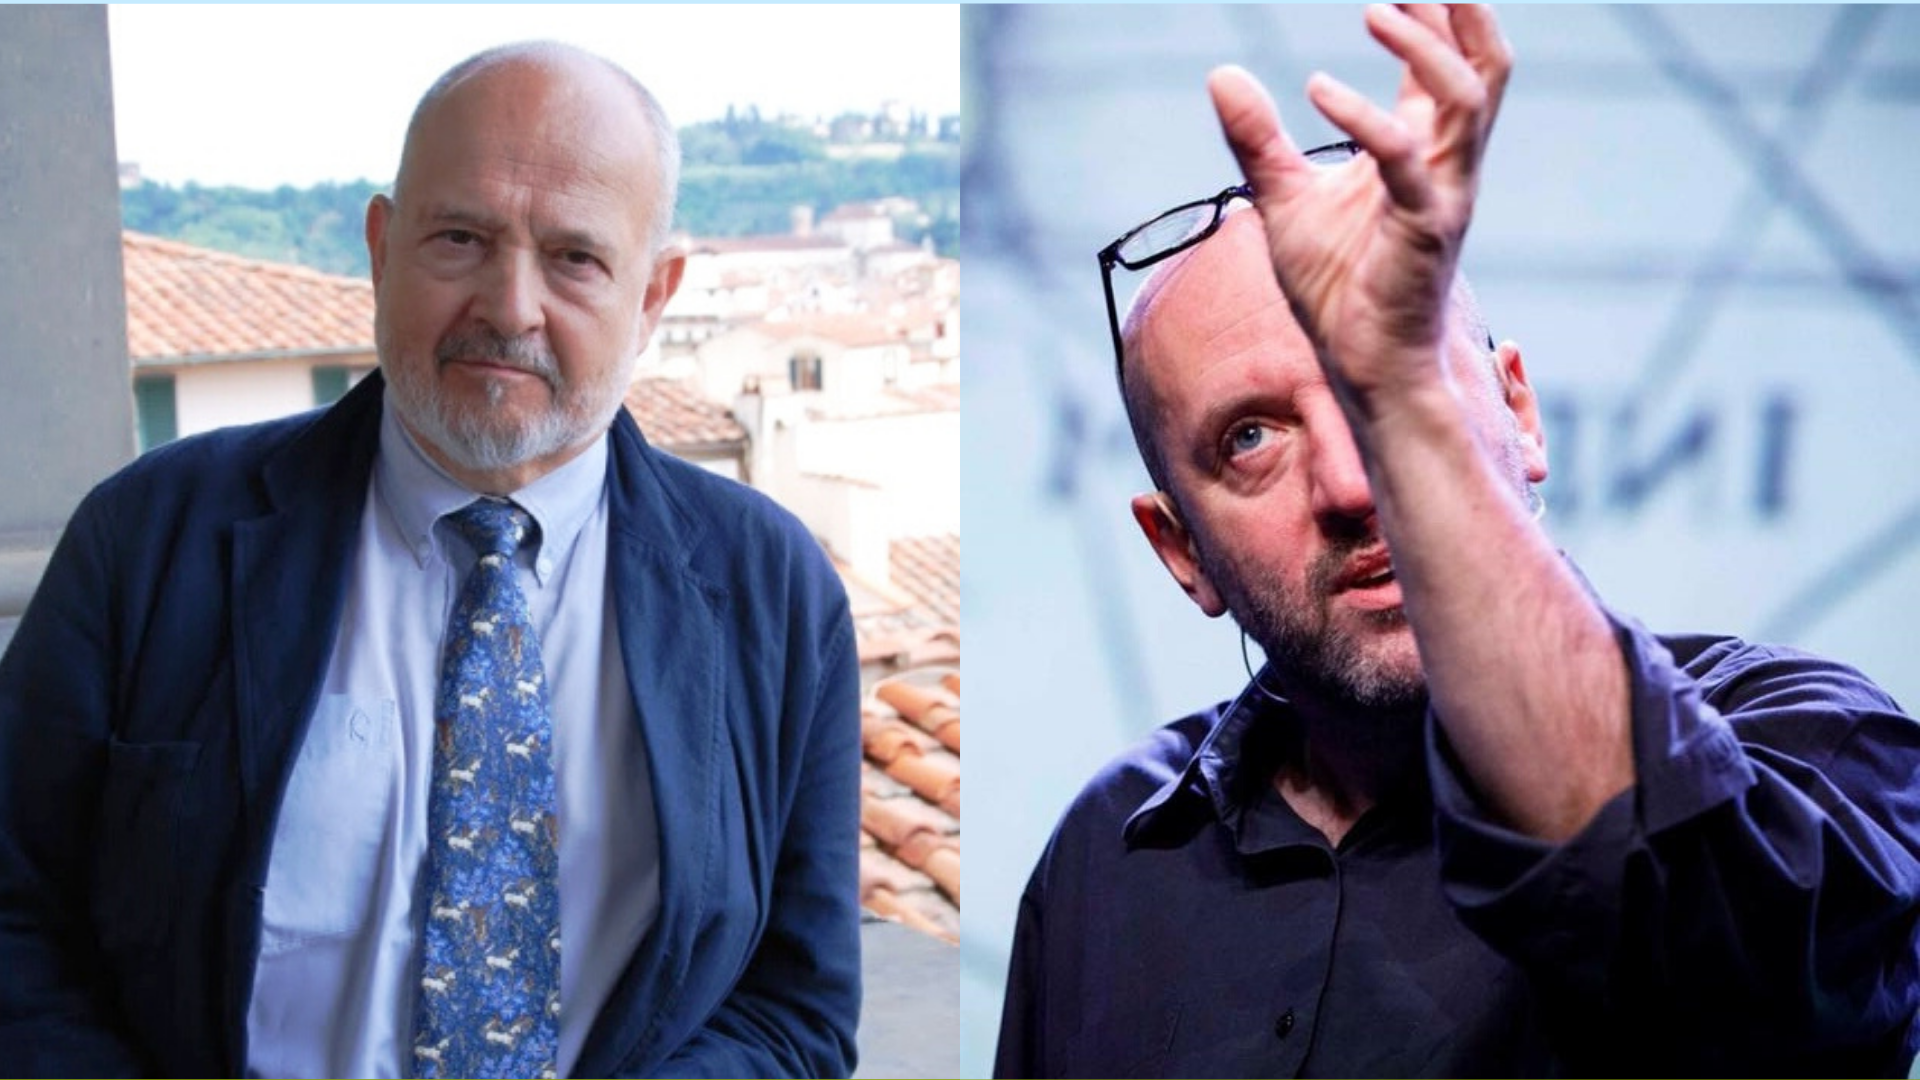 Incertezze globali: incontro con Franco Cardini e Alessandro Vanoli